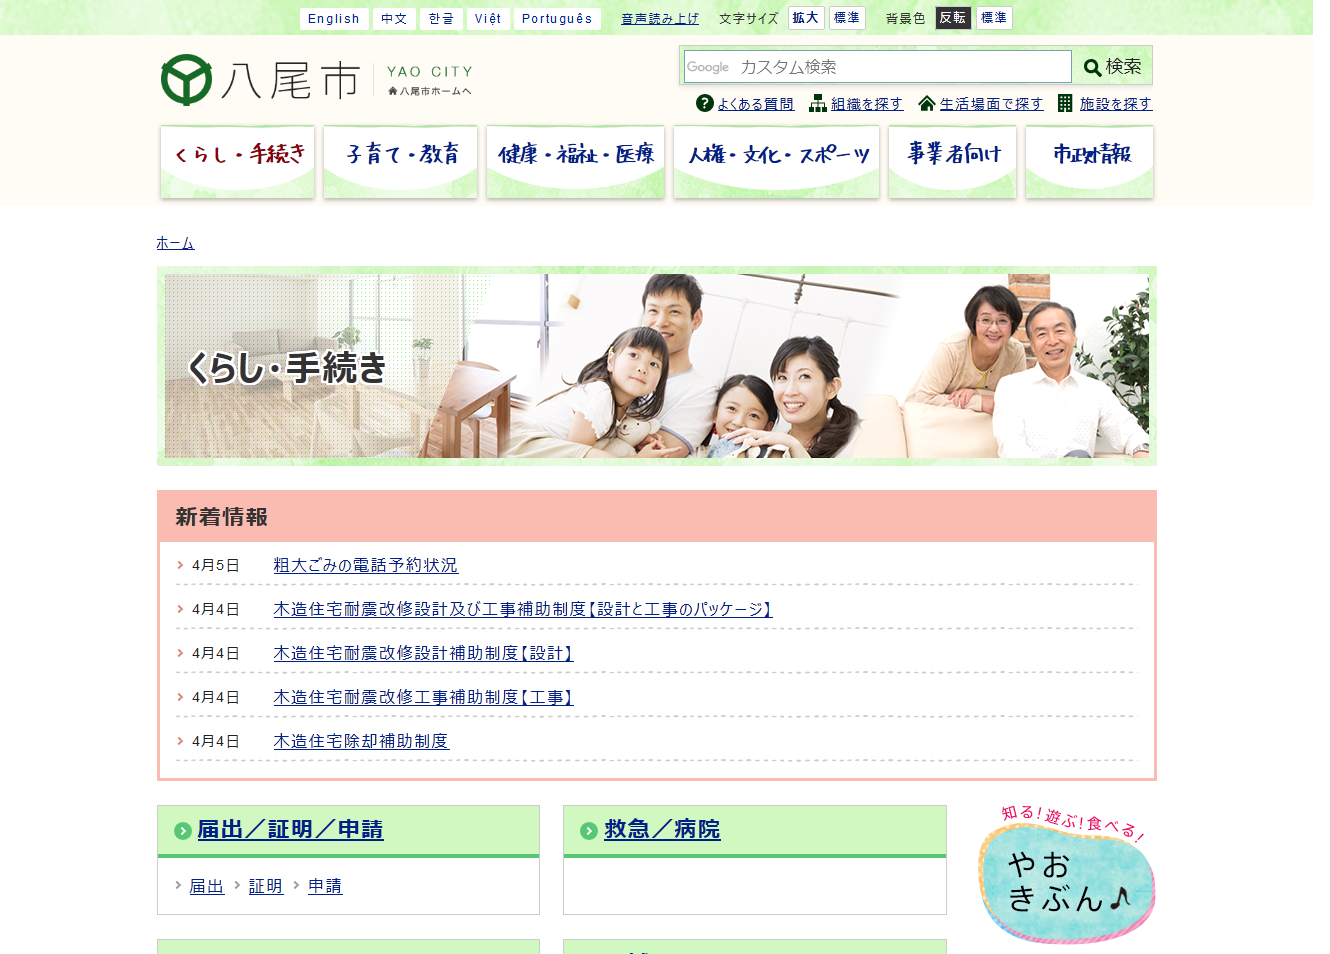 八尾市役所公式ホームページのくらし・手続きページキャプチャ画像